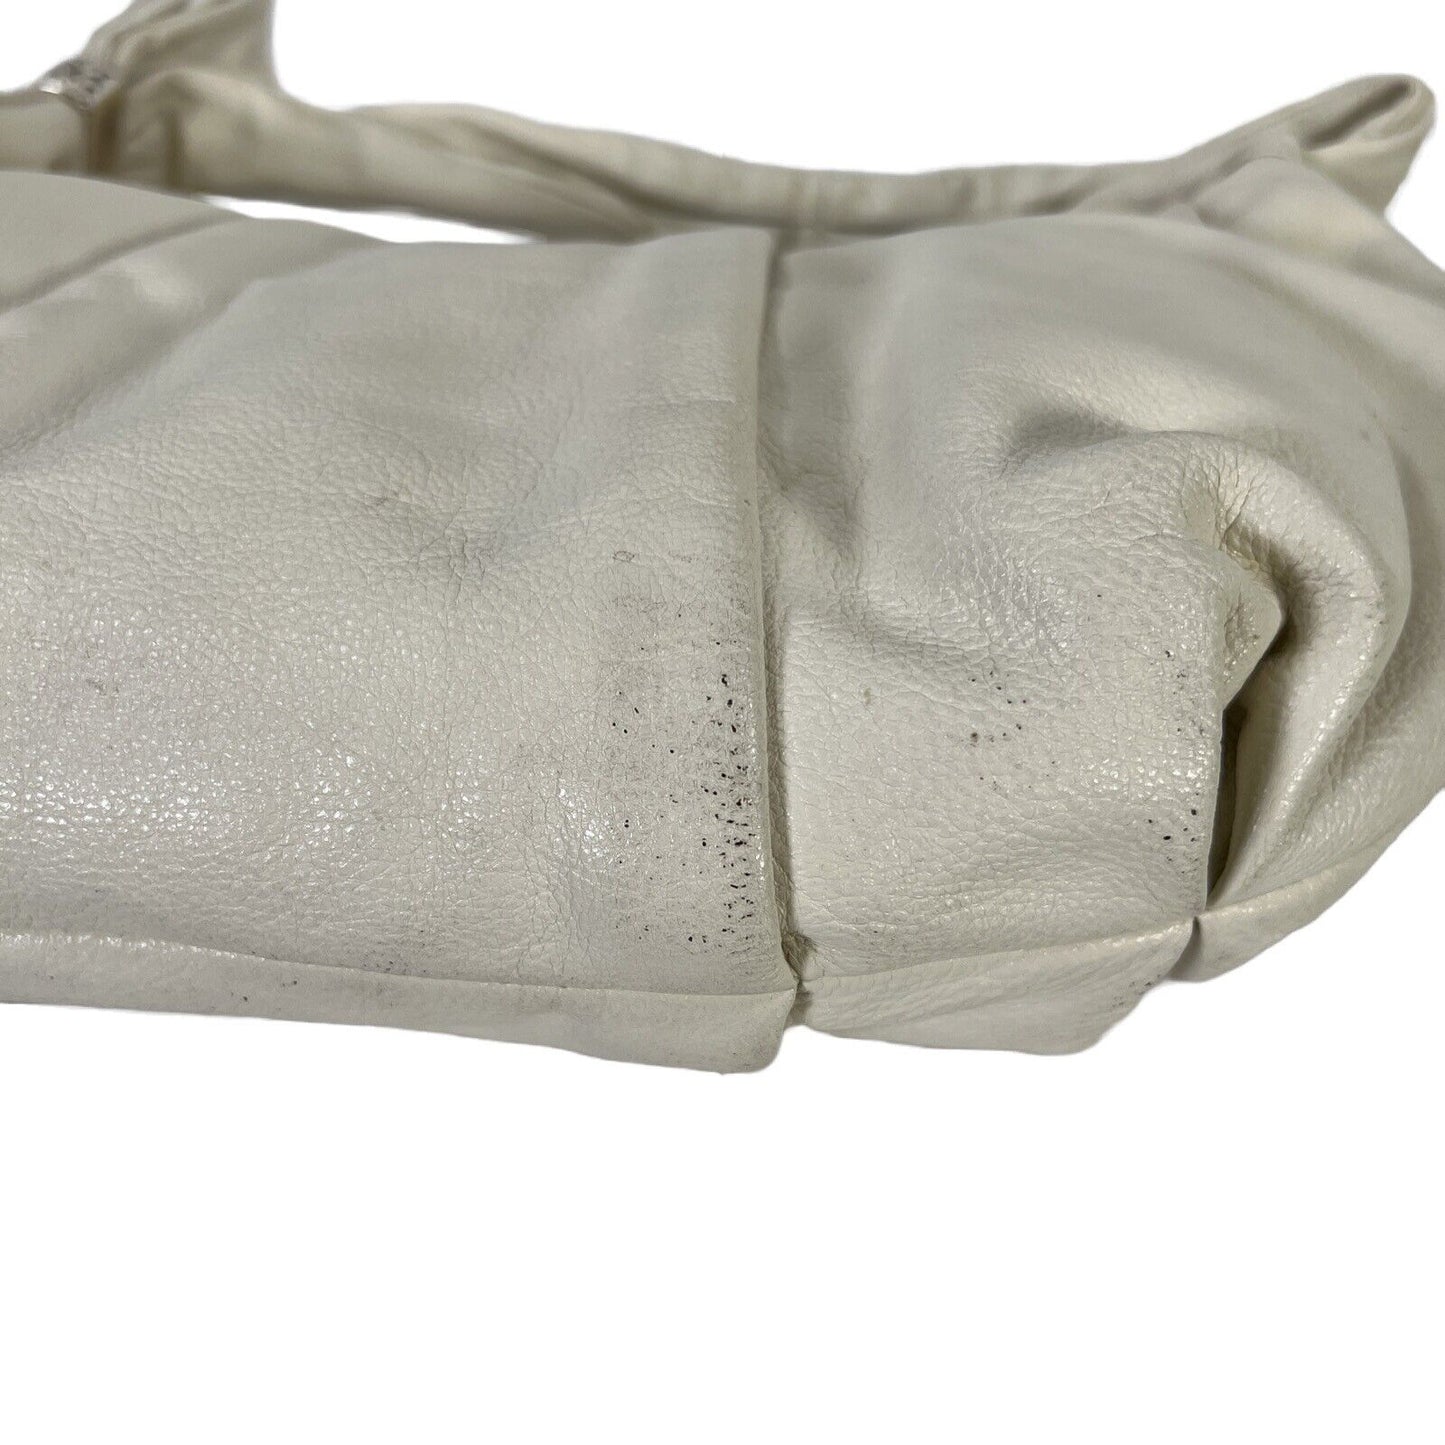 Brighton Ivory Leather Shoulder Bag Hobo Purse